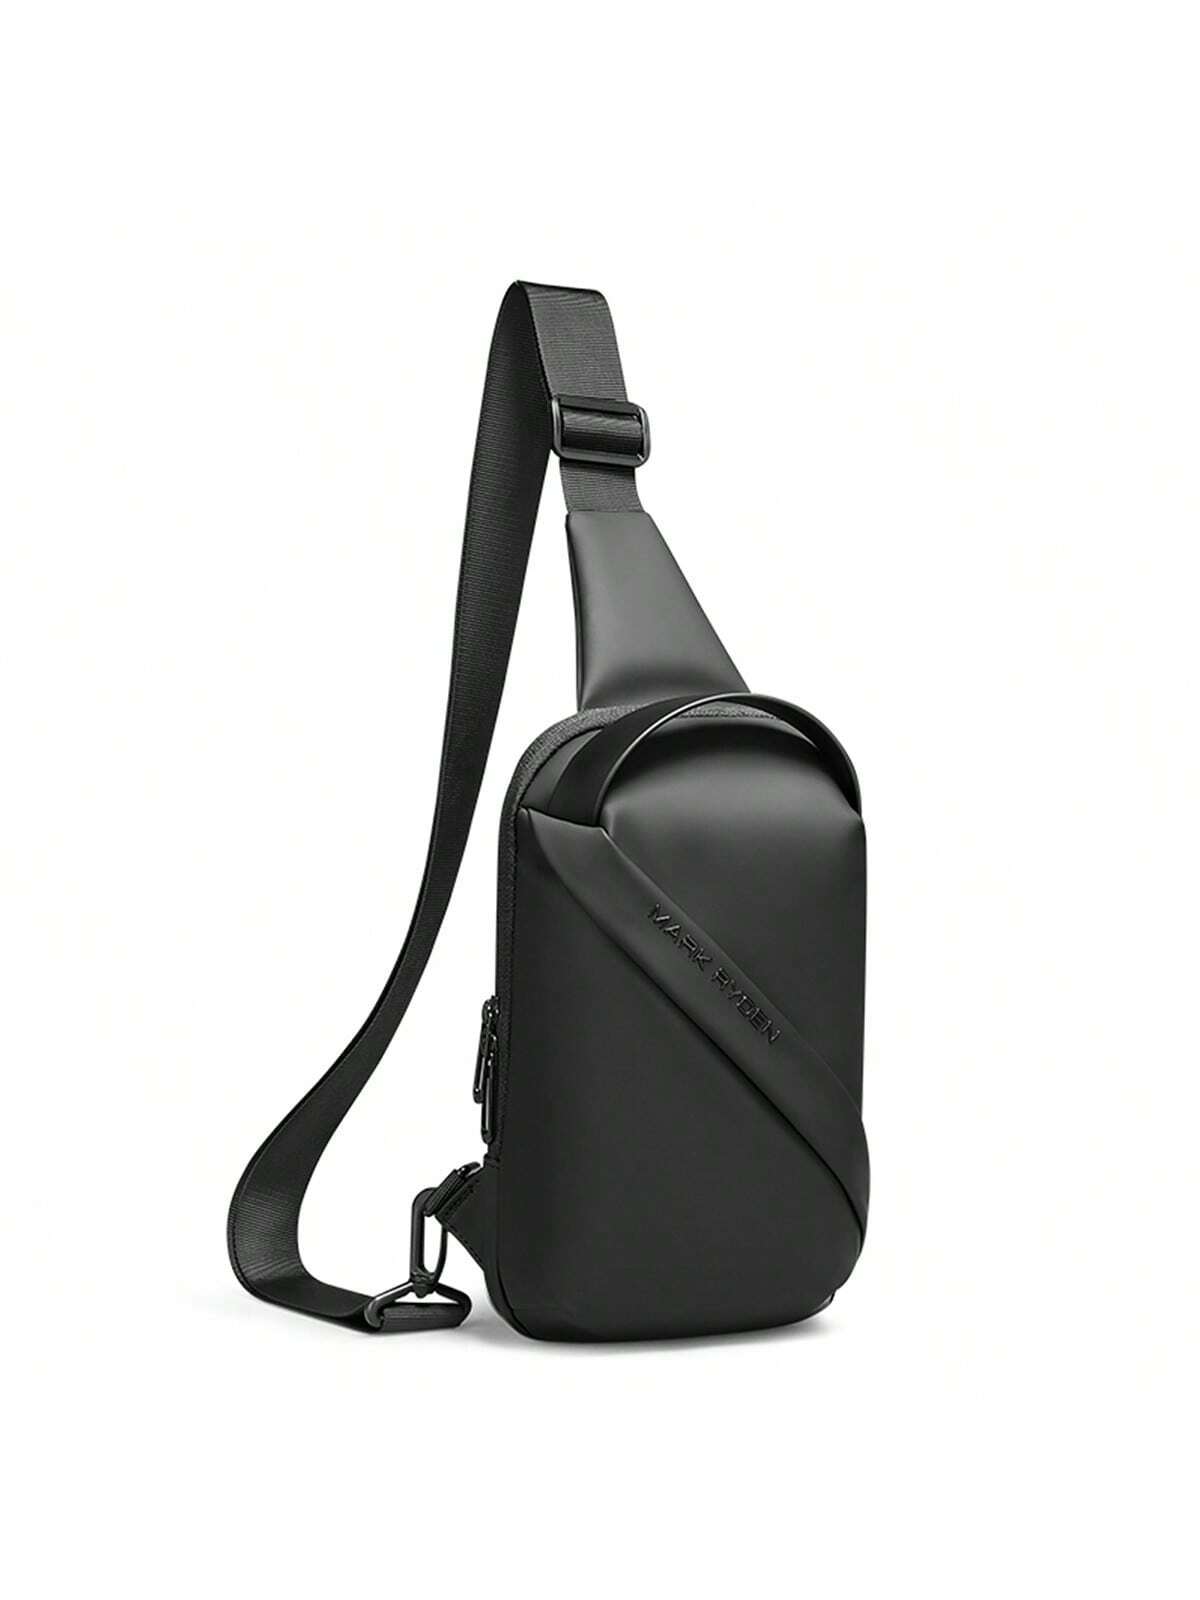 MARK RYDEN сумка через плечо, черный спортивная поясная сумка для активного отдыха рюкзак для пешего туризма велоспорта альпинизма велосипедная сумка водонепроницаемая су